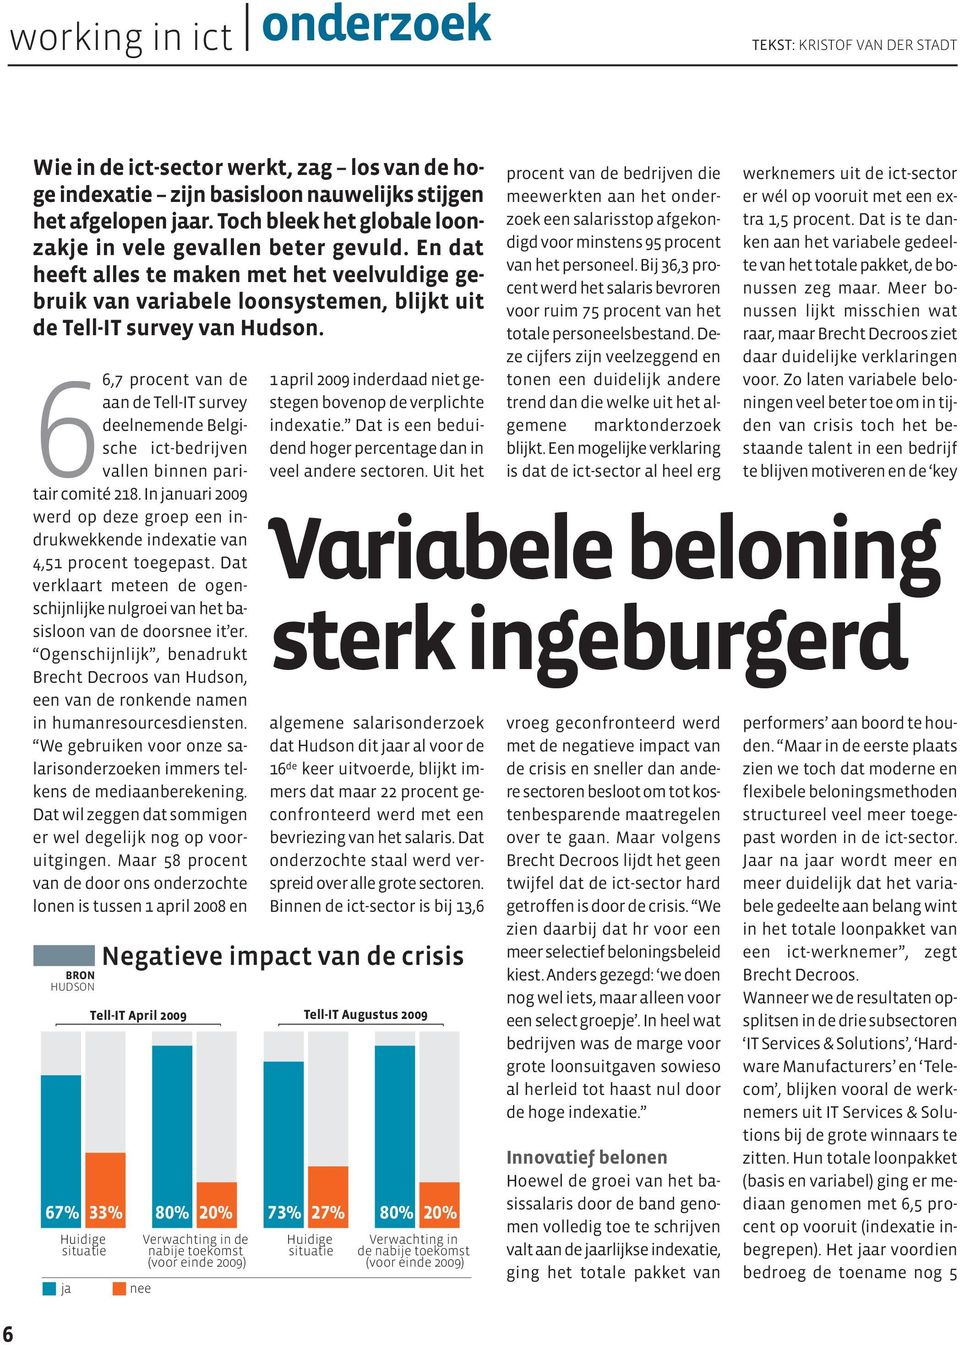 66,7 procent van de aan de Tell-IT survey deelnemende Belgische ict-bedrijven vallen binnen paritair comité 218.